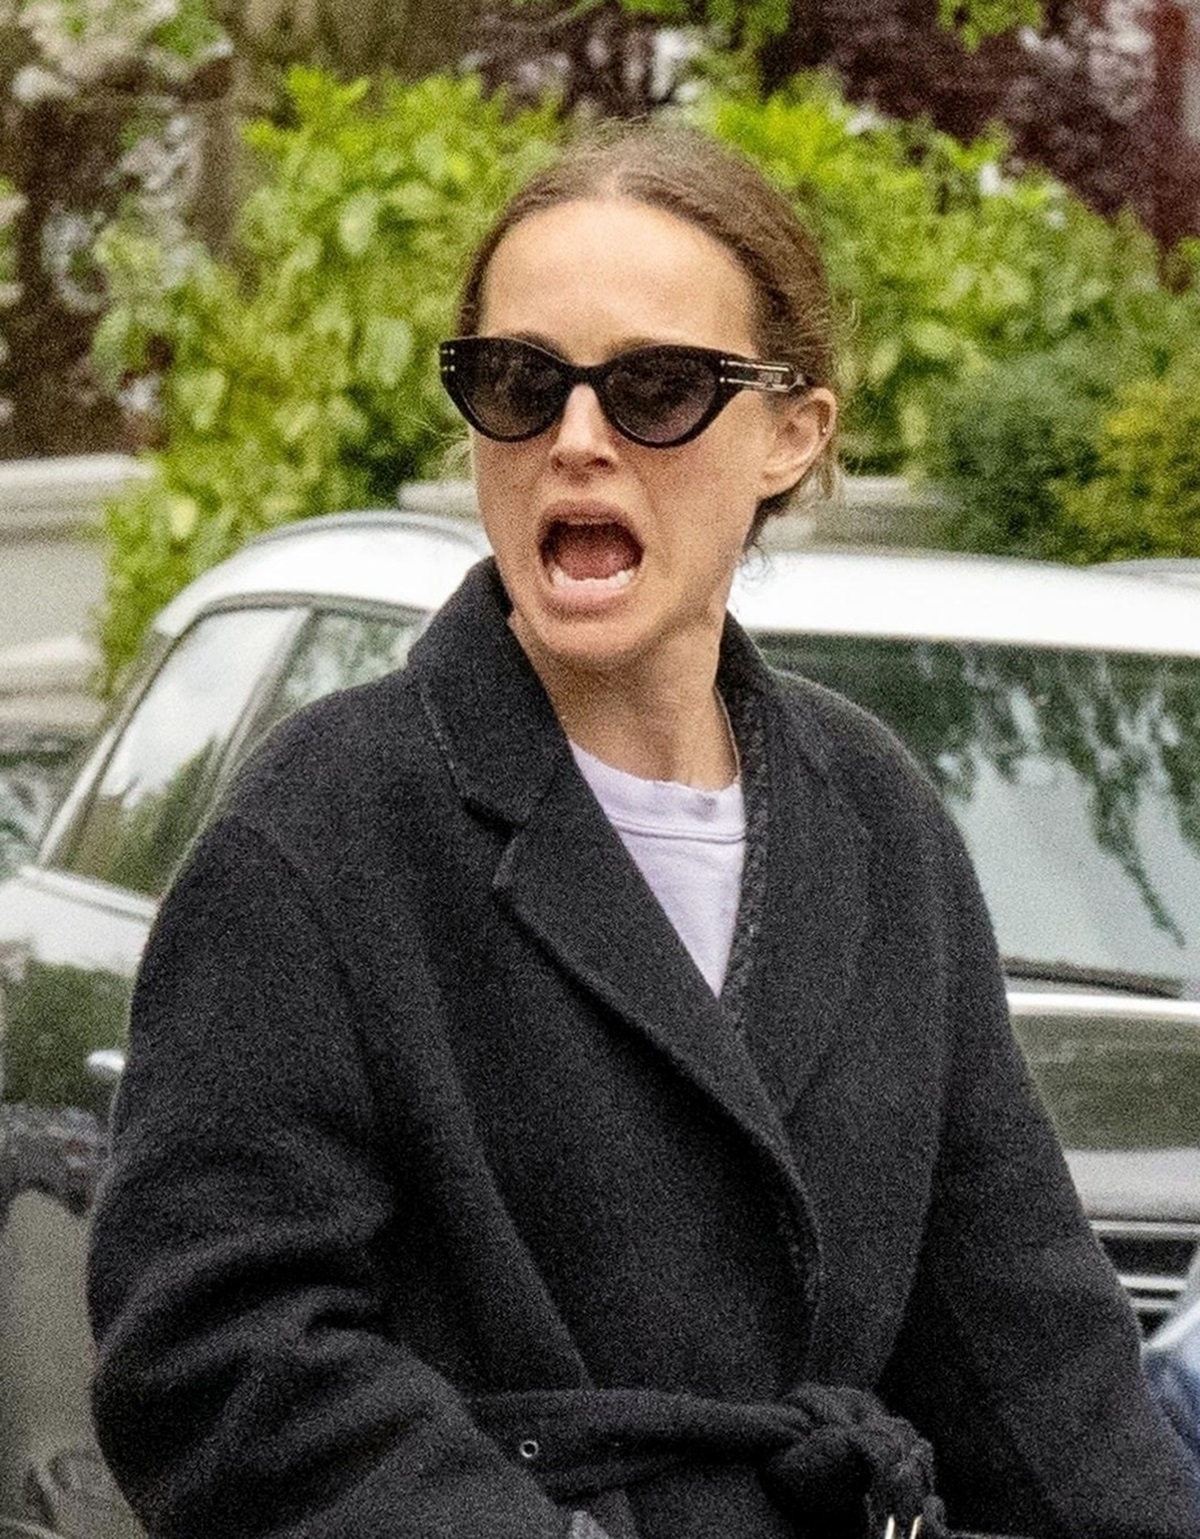 Natalie Portman surprinsă strigând pe străzile din Londra